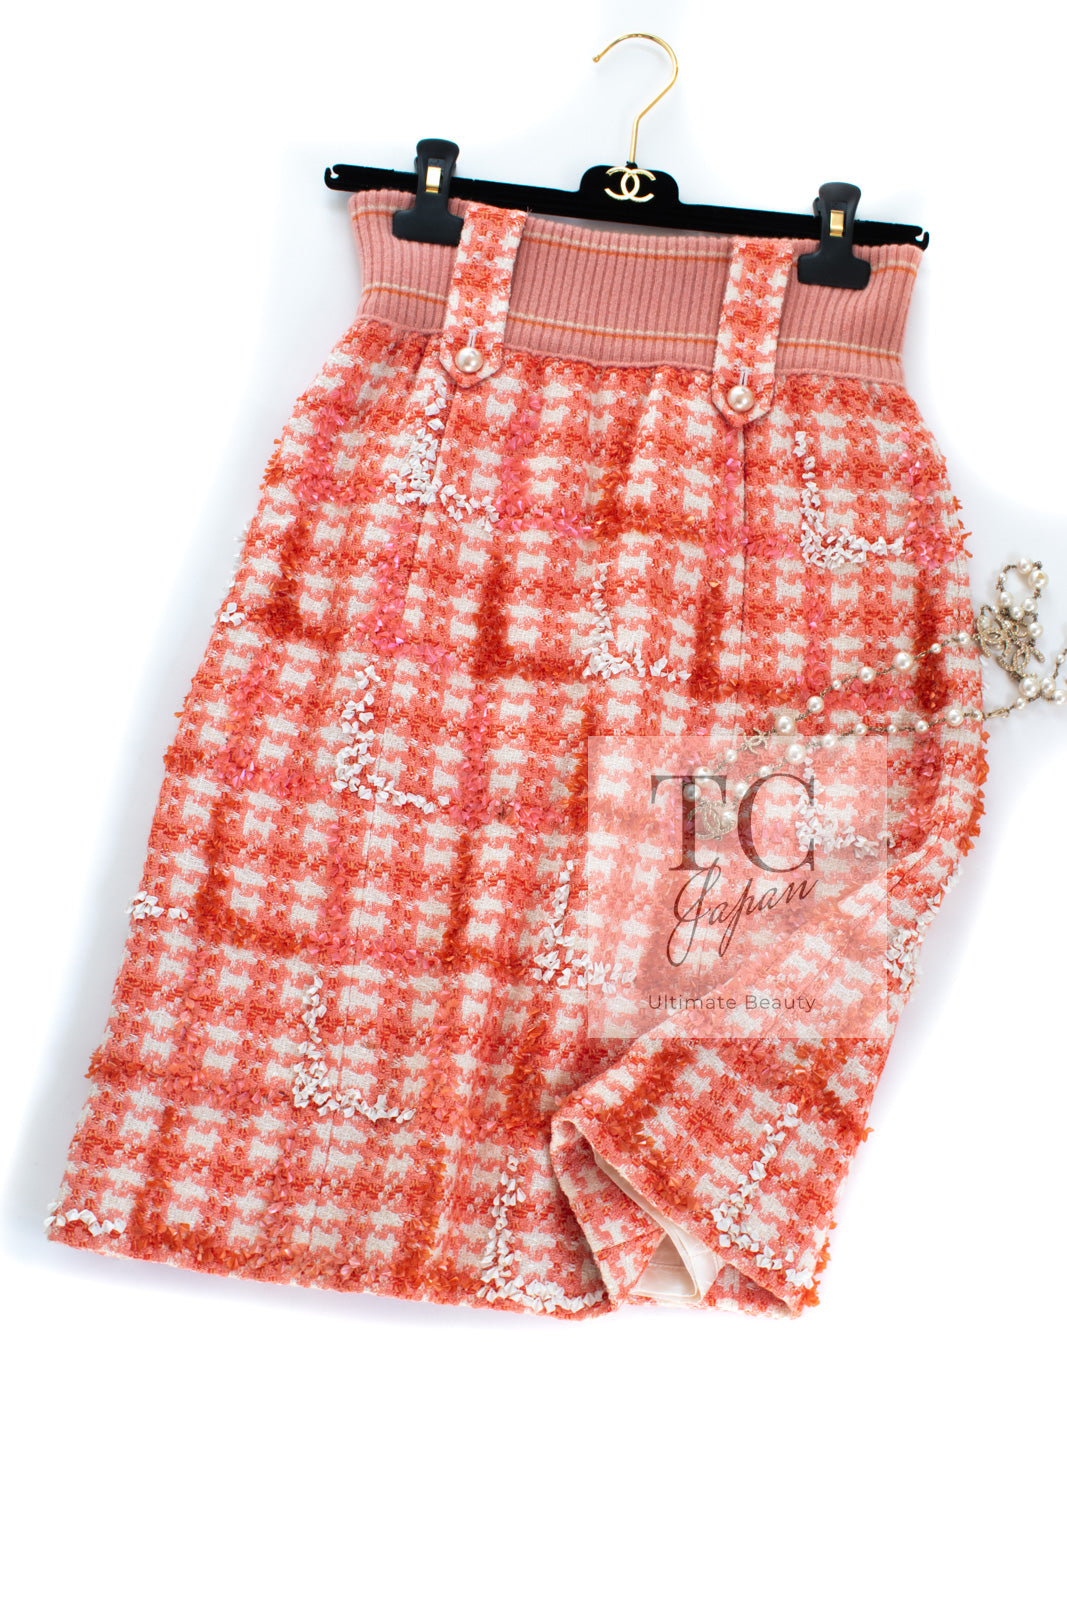 CHANEL 01S Orange Ivory Pearl Button Tweed Skirt 36 シャネル オレンジ アイボリー パール ボタンツイード スカート